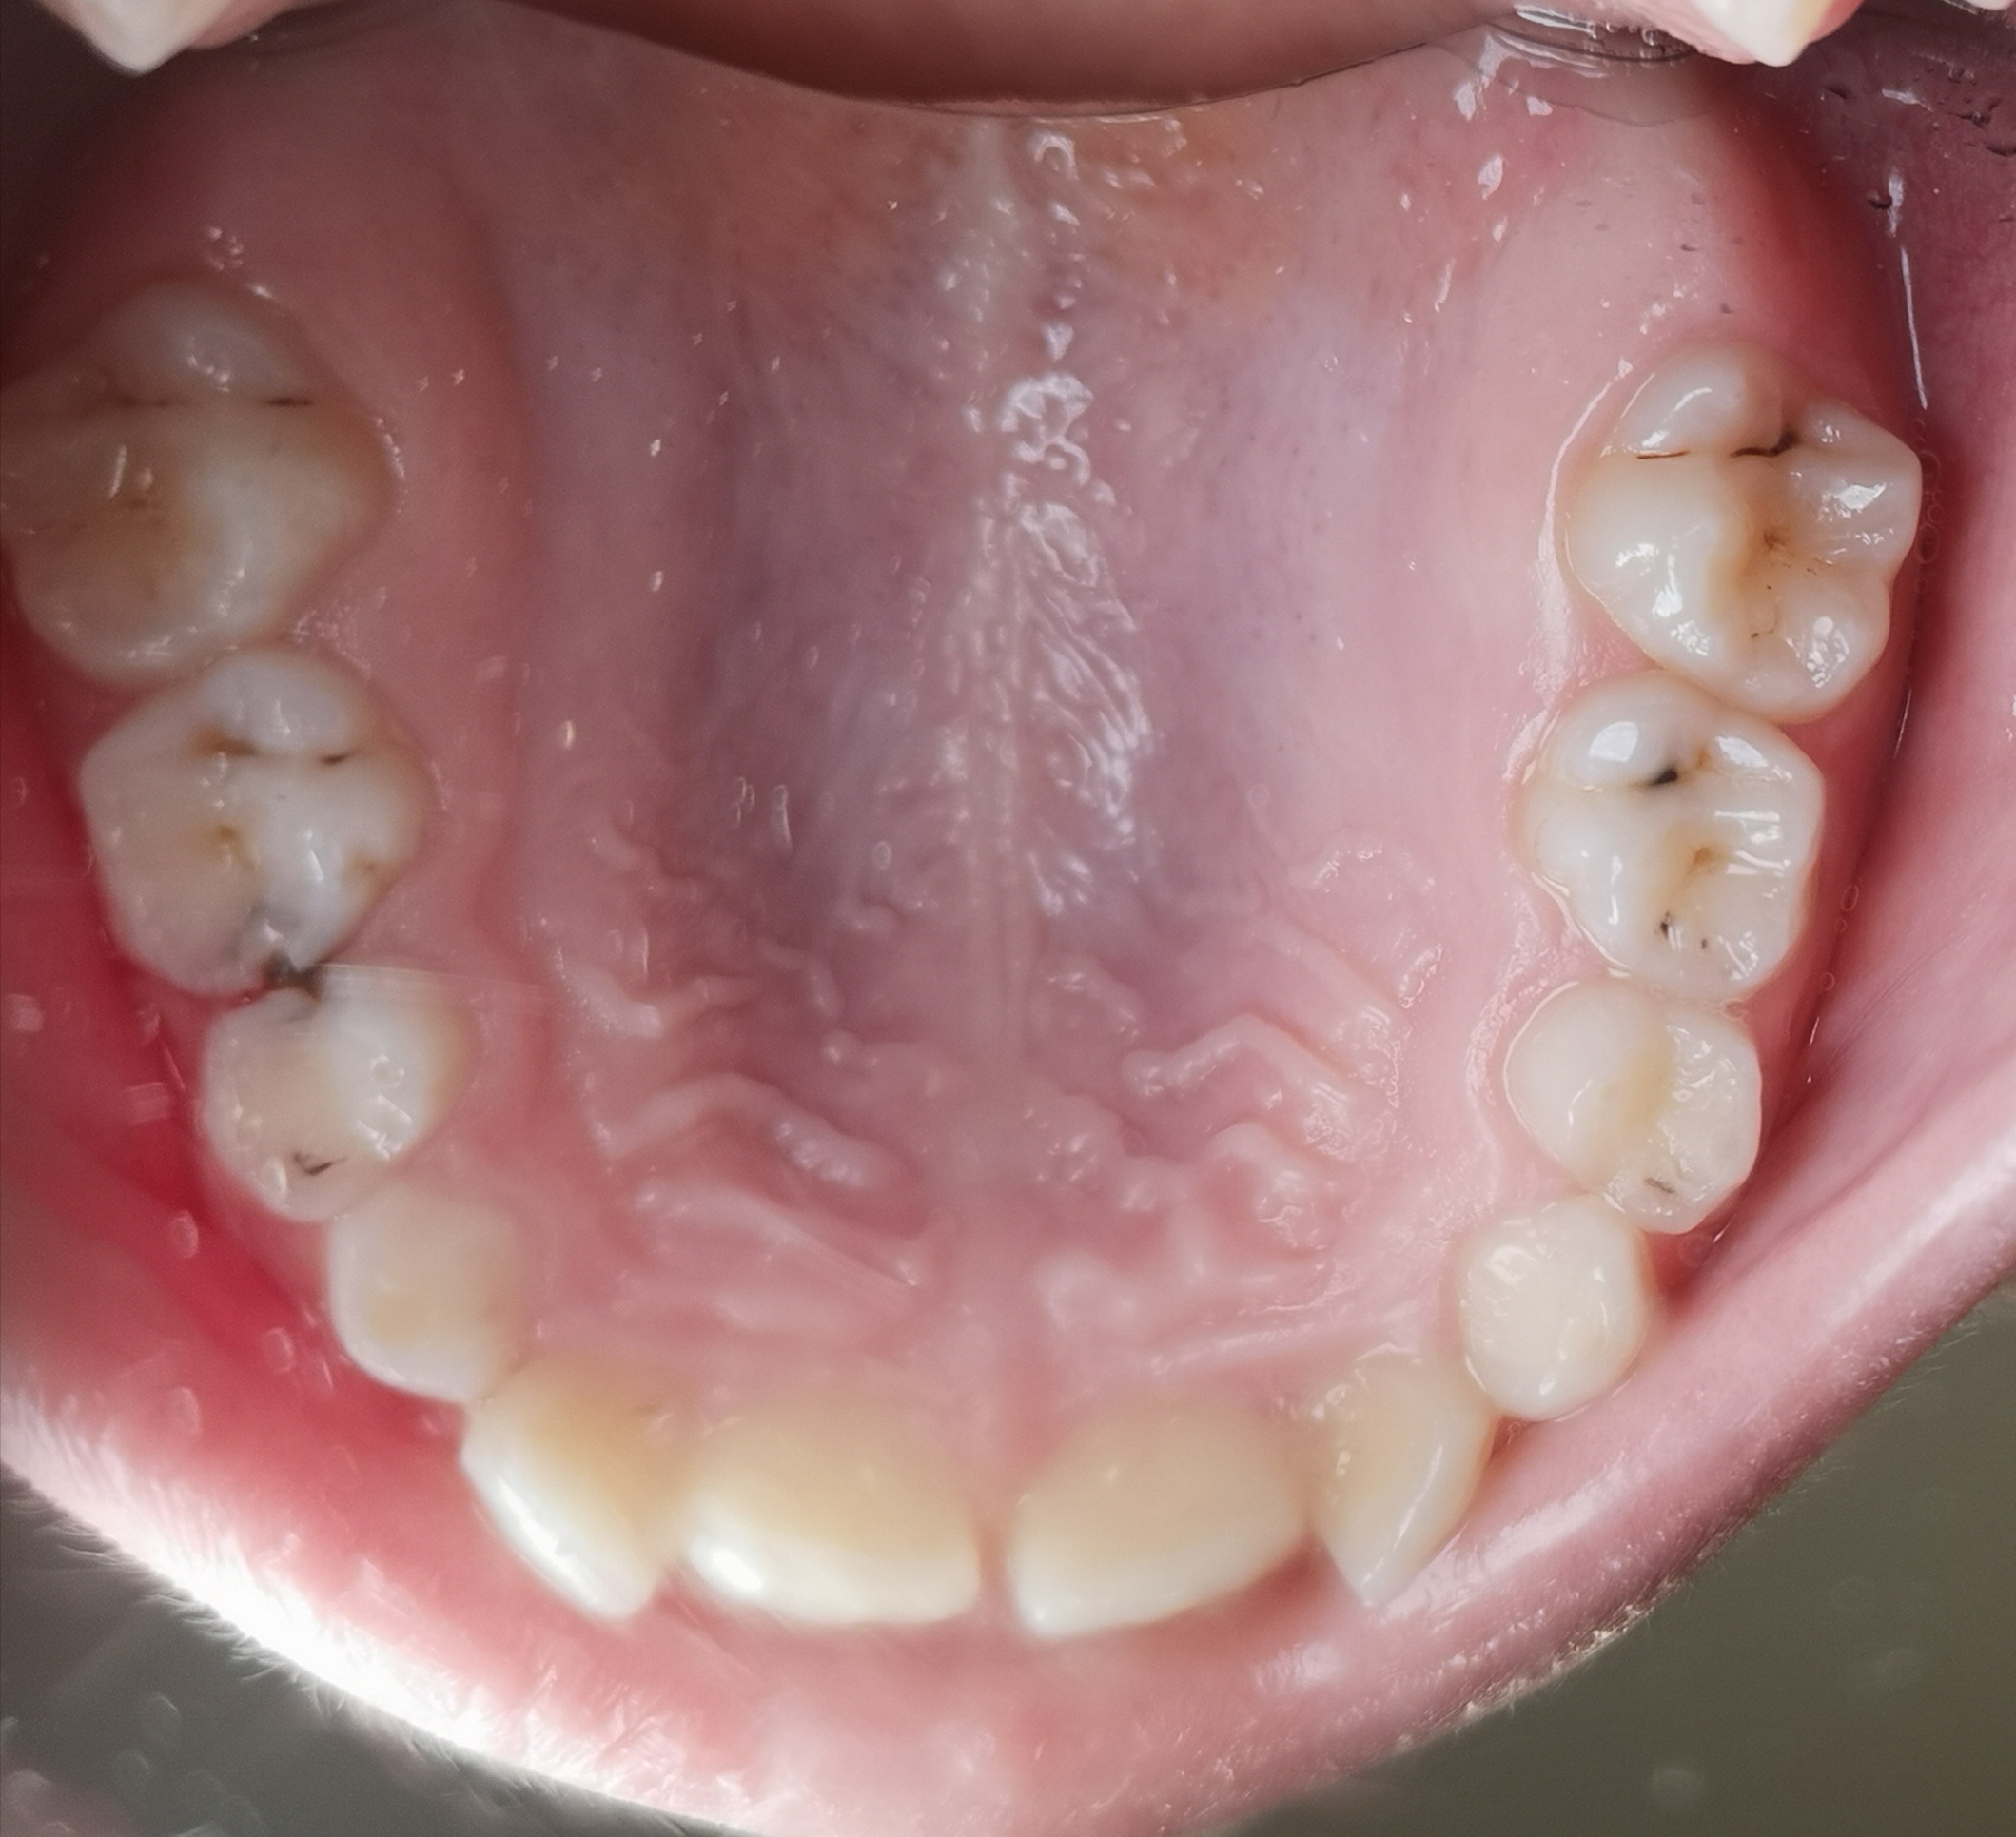 © Rammer 10jähriges Kind: Wechselgebiss mit multiplen kariösen Läsionen im Oberkiefer. Im Zahnzwischenraum regio 64 und 65 ist Karies zu erkennen. Bereits in jungen Jahren ist die Reinigung der Zahnzwischenräume unerlässlich.